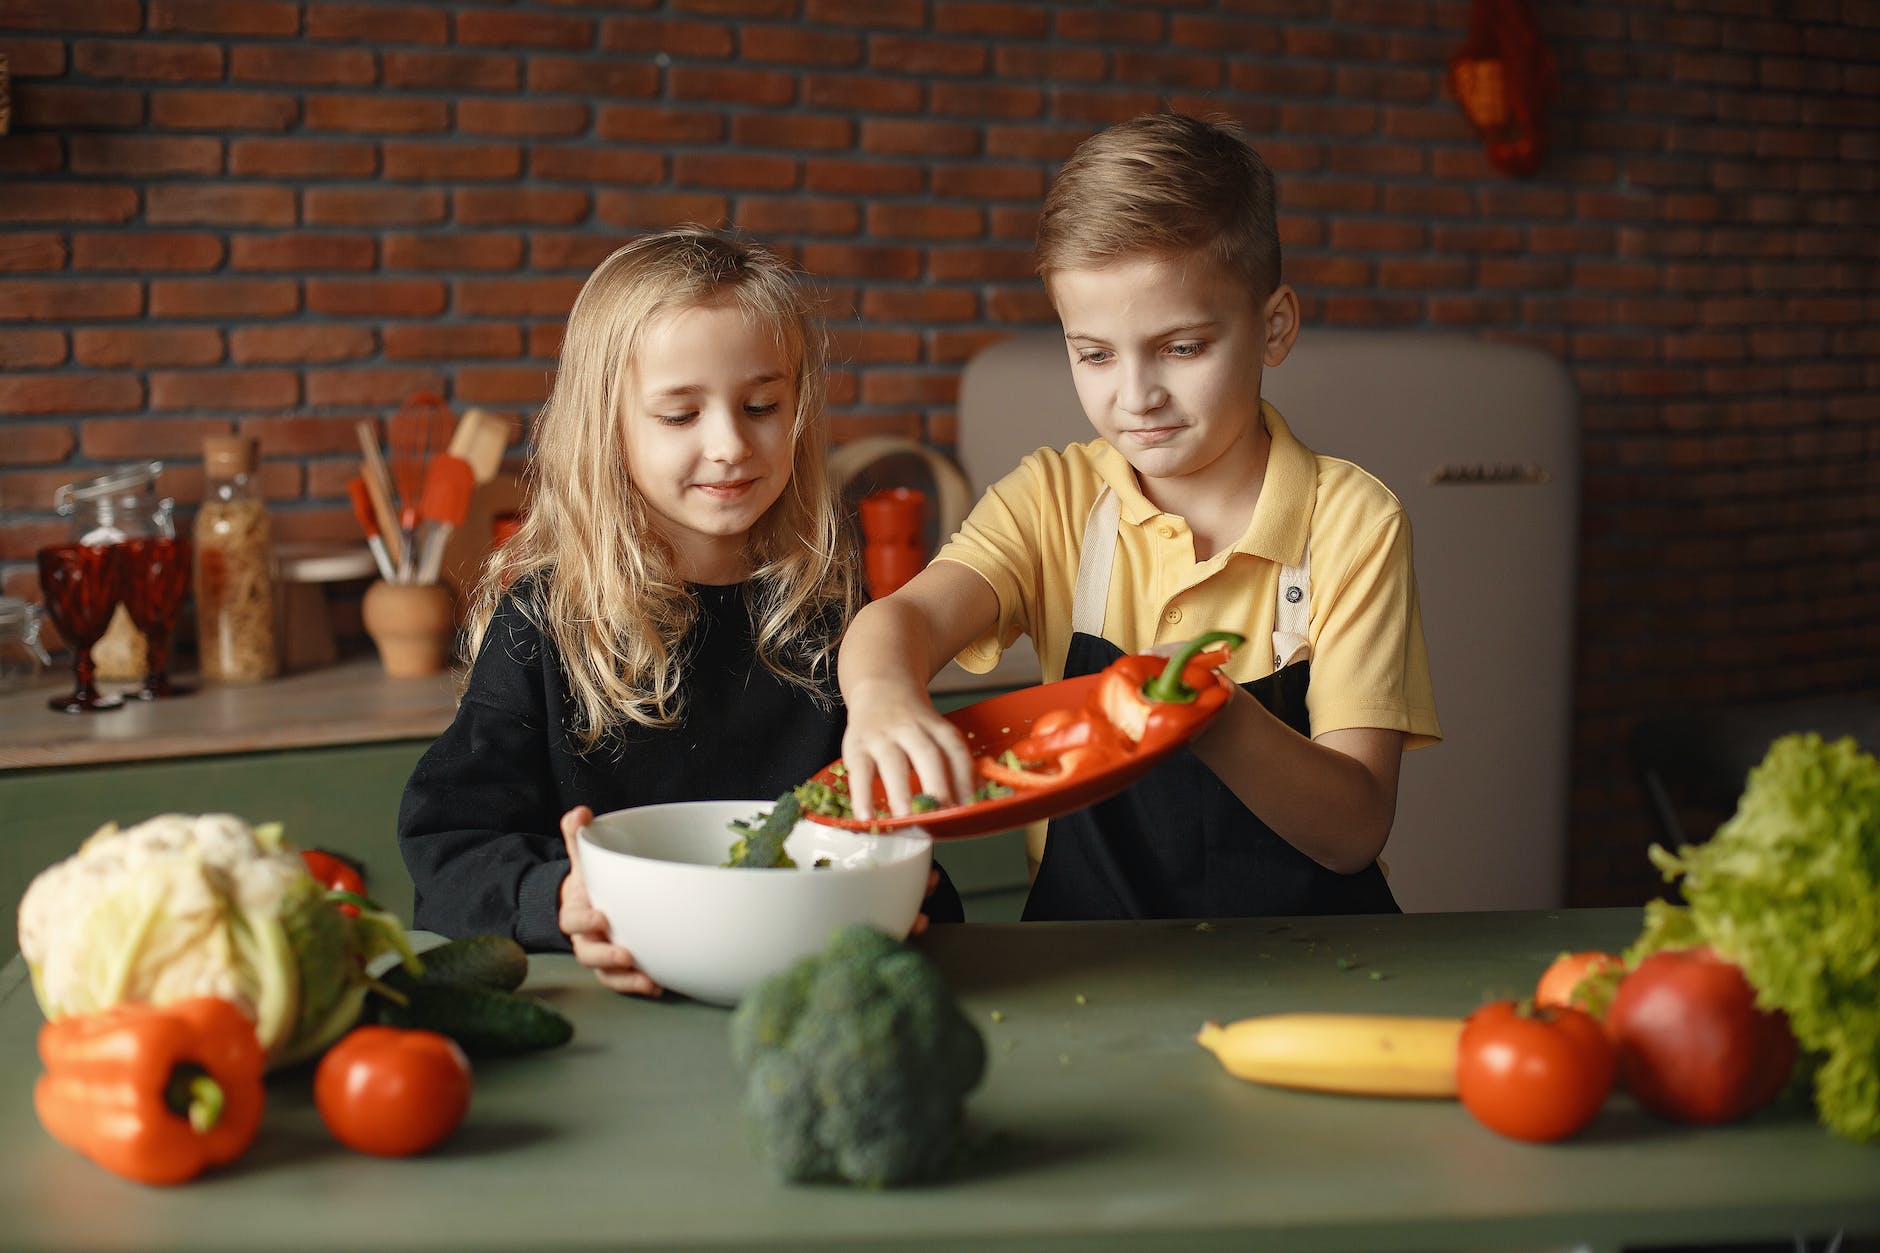 content children preparing healthy salad together in loft kitchen